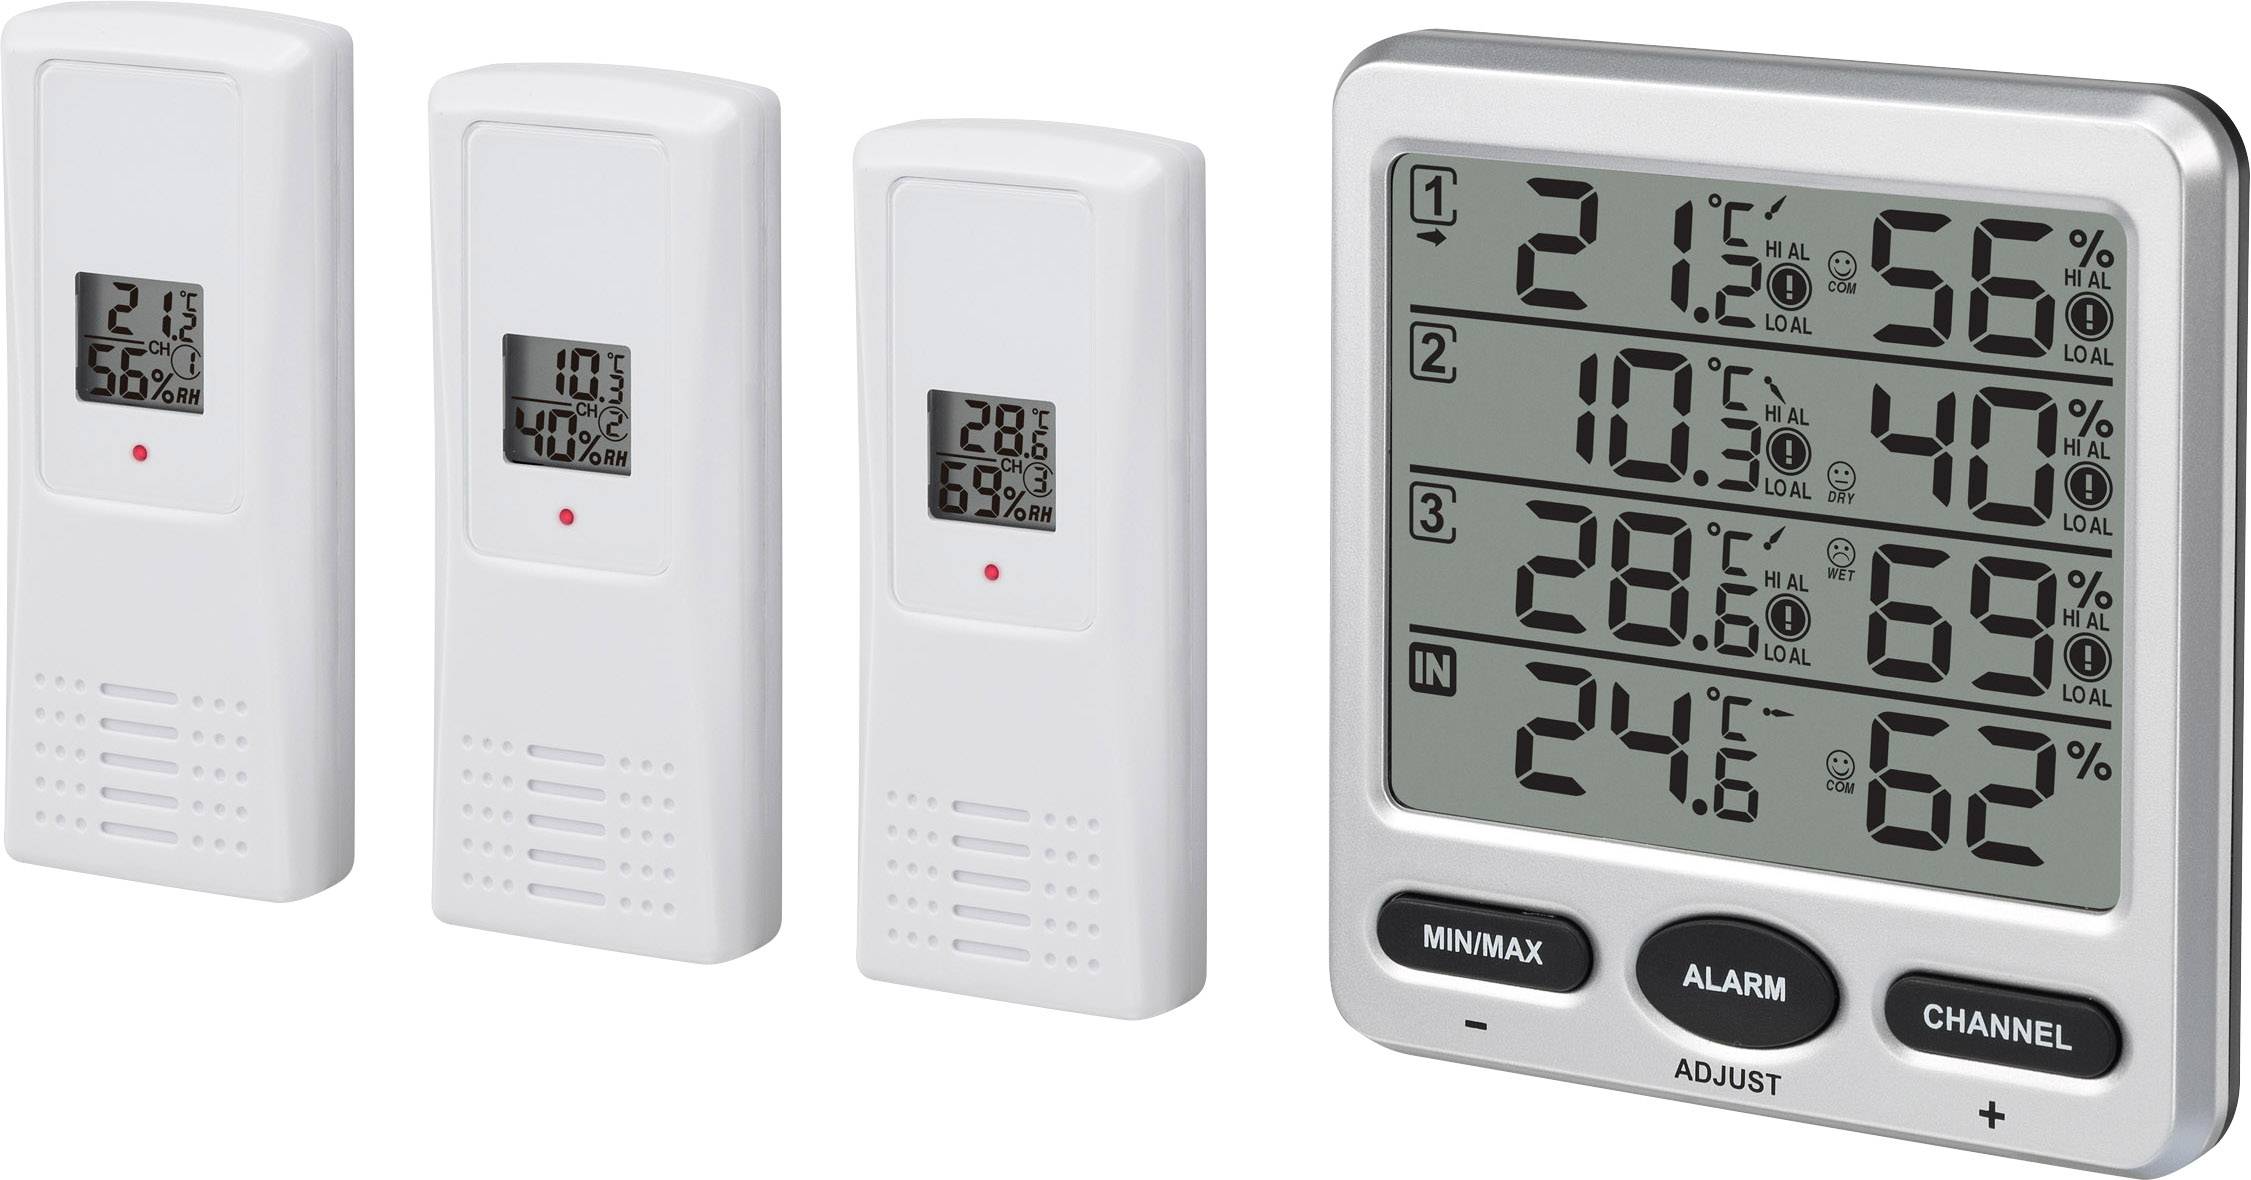 Ästhetische LED-Uhr  ZB5 (ziffernhöhe 5cm) Uhren und Thermometer